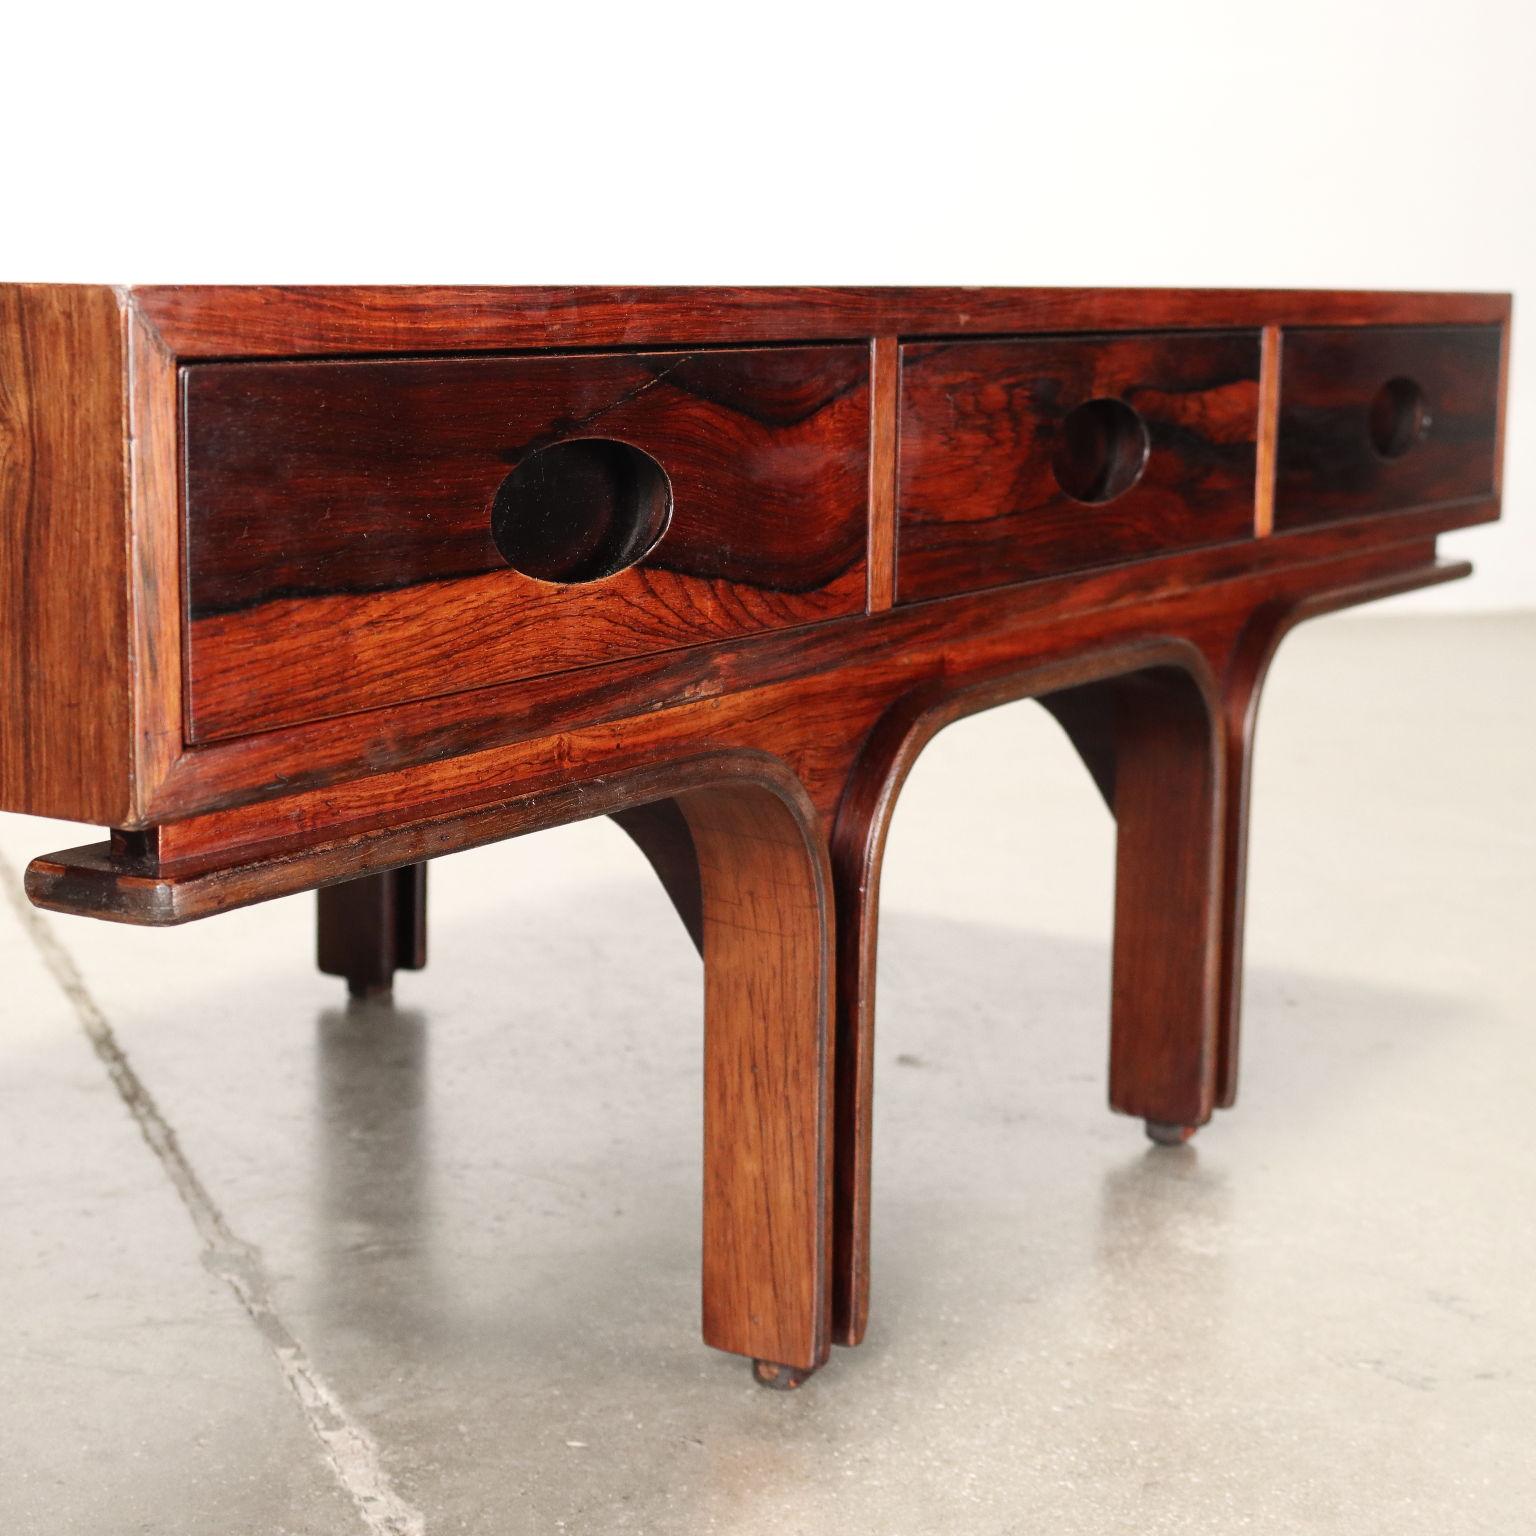 Tavolino da caffè anni '60 disegnato da Gianfranco Frattini per una produzione Bernini in legno impiallacciato legno esotico con tre cassetti sottopiano. Condizioni molto buone. Restaurato.